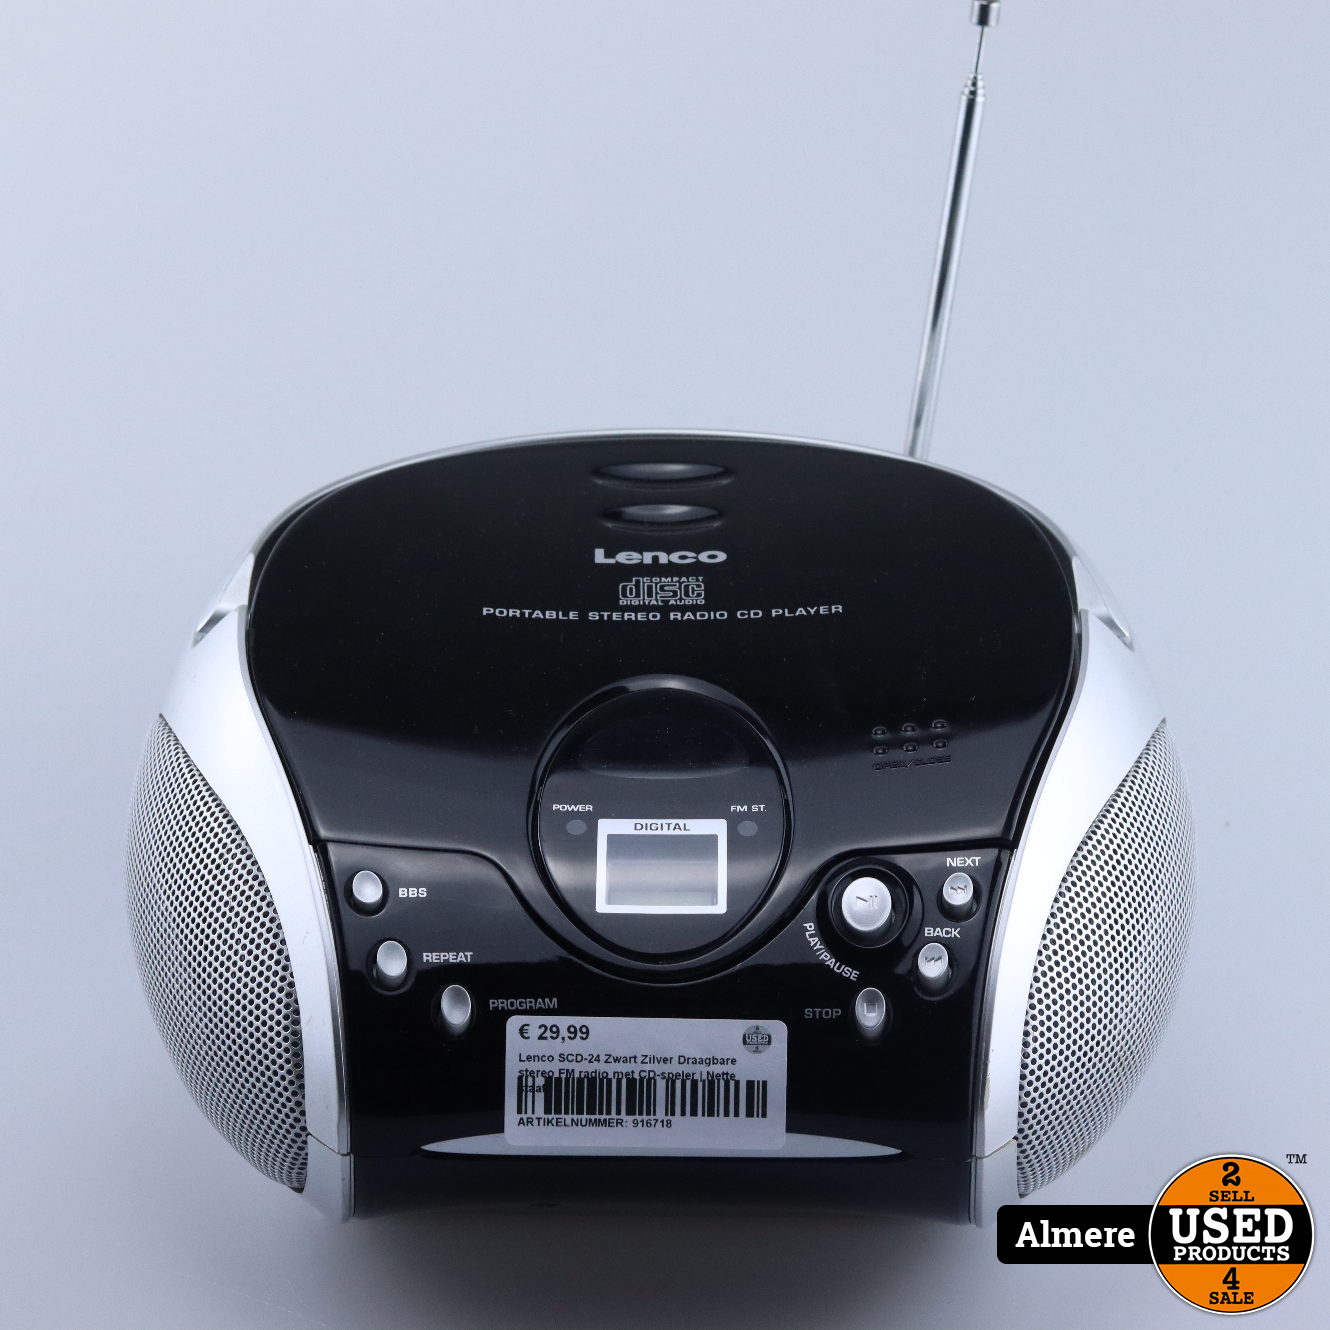 Walging Oproepen Ruimteschip Lenco SCD-24 Zwart Zilver Draagbare stereo FM radio met CD-speler | Nette  staat - Used Products Almere